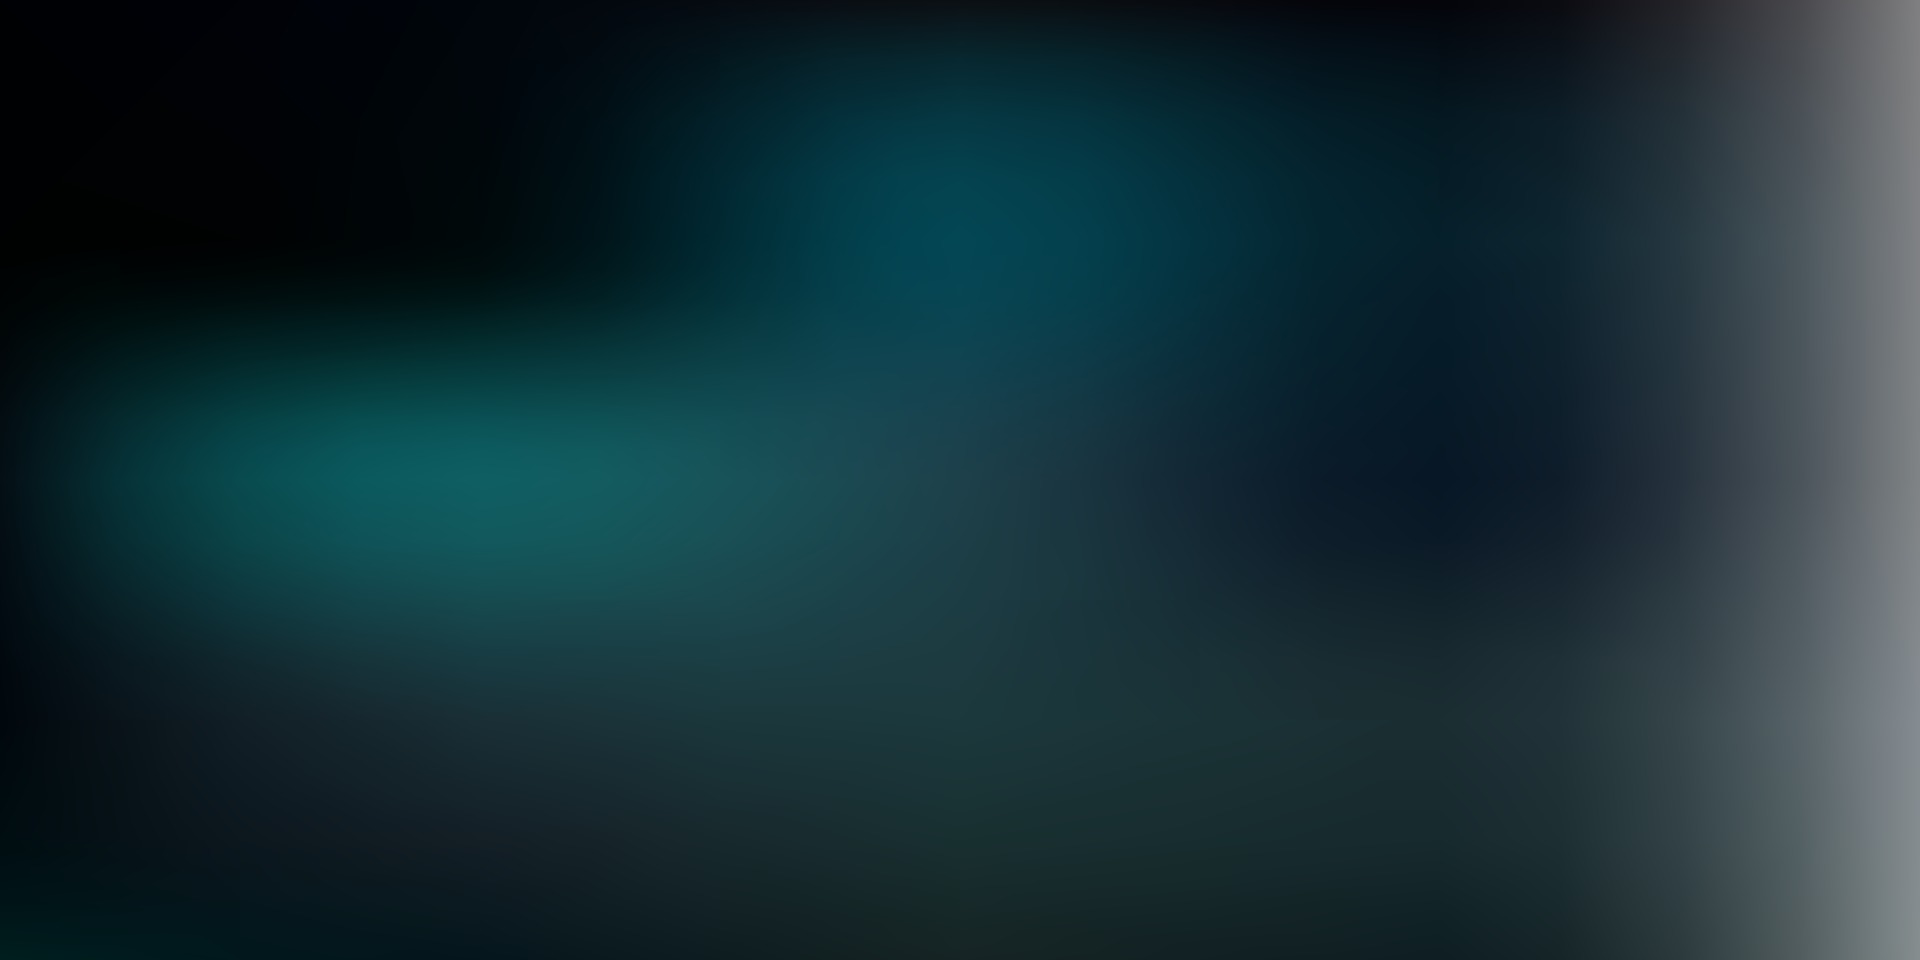 Dark blue vector blur background. 2087624 Vector Art at Vecteezy